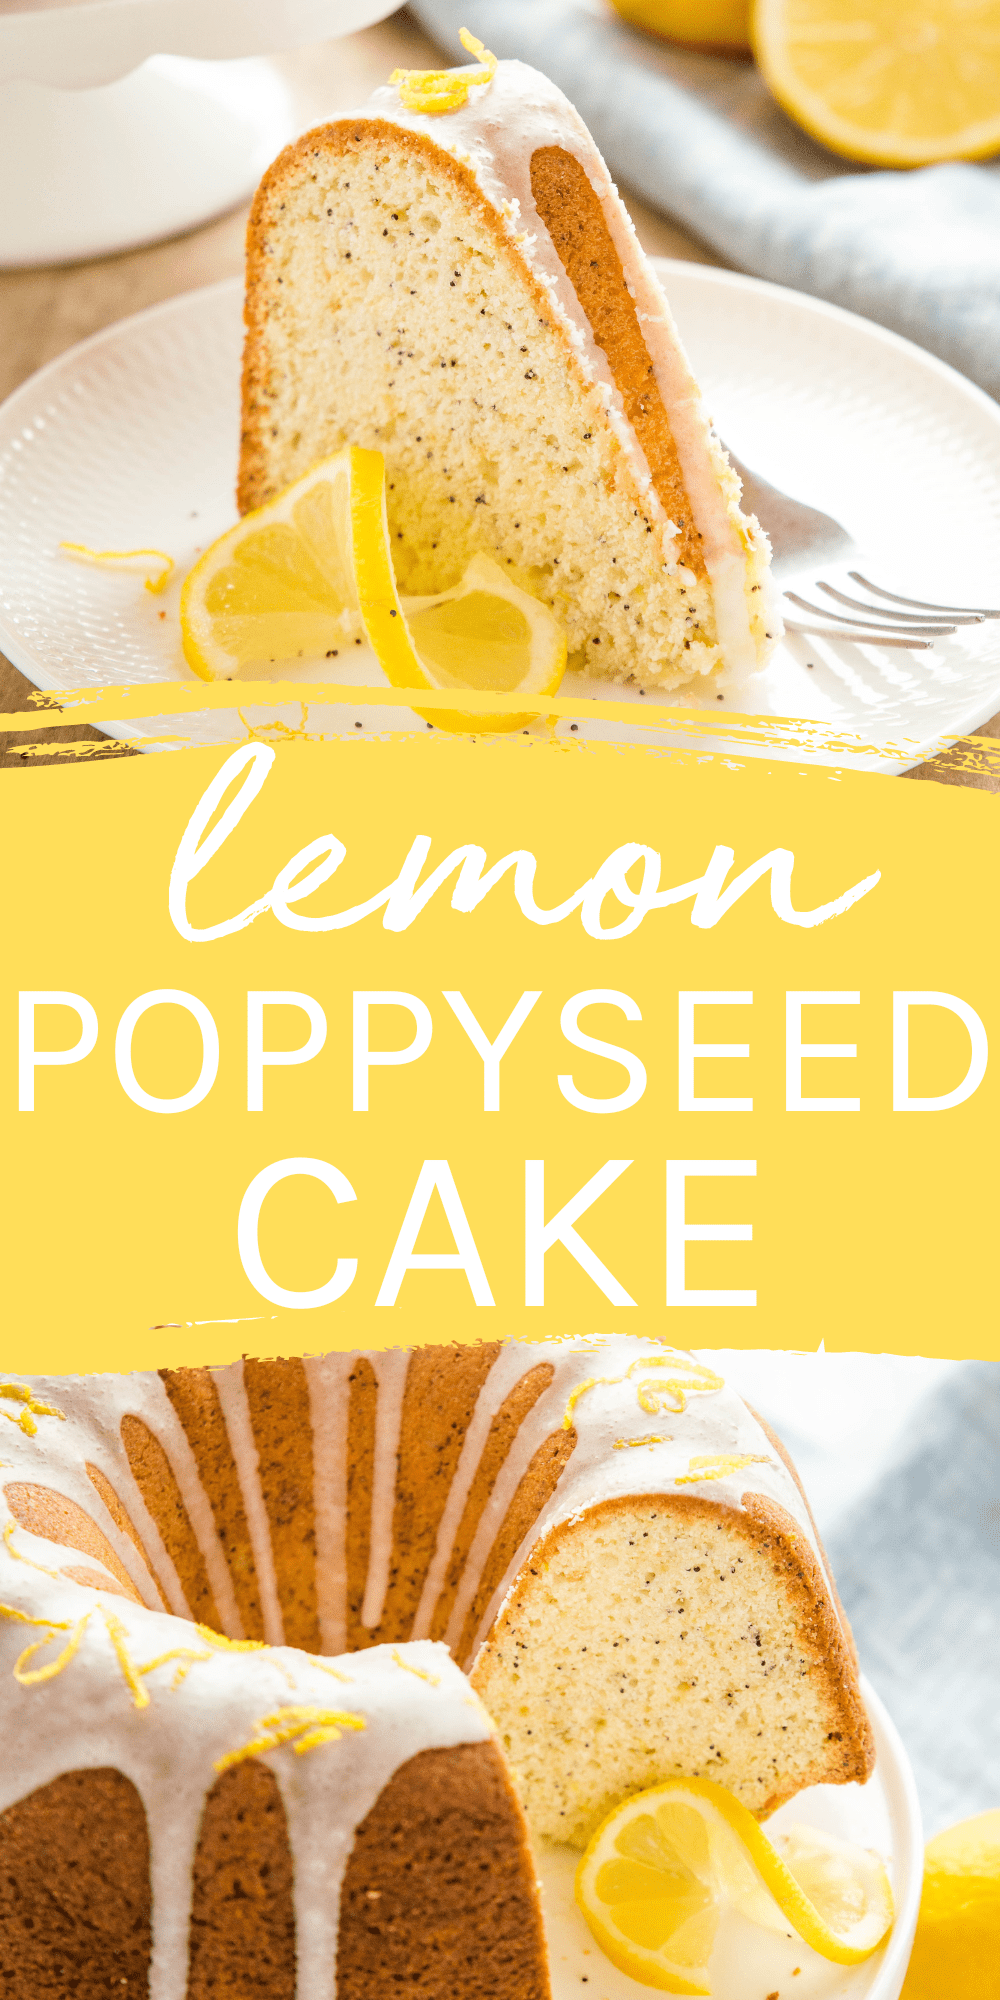 This Lemon Poppy Seed Cake is moist and tender, busting with fresh lemon flavour. Topped with a simple lemon glaze. Recipe from thebusybaker.ca! #lemonpoppyseedcake #lemoncake #lemonpoppyseed #springcake #bundtcake #easycakerecipe #baking #lemondessert #lemon via @busybakerblog